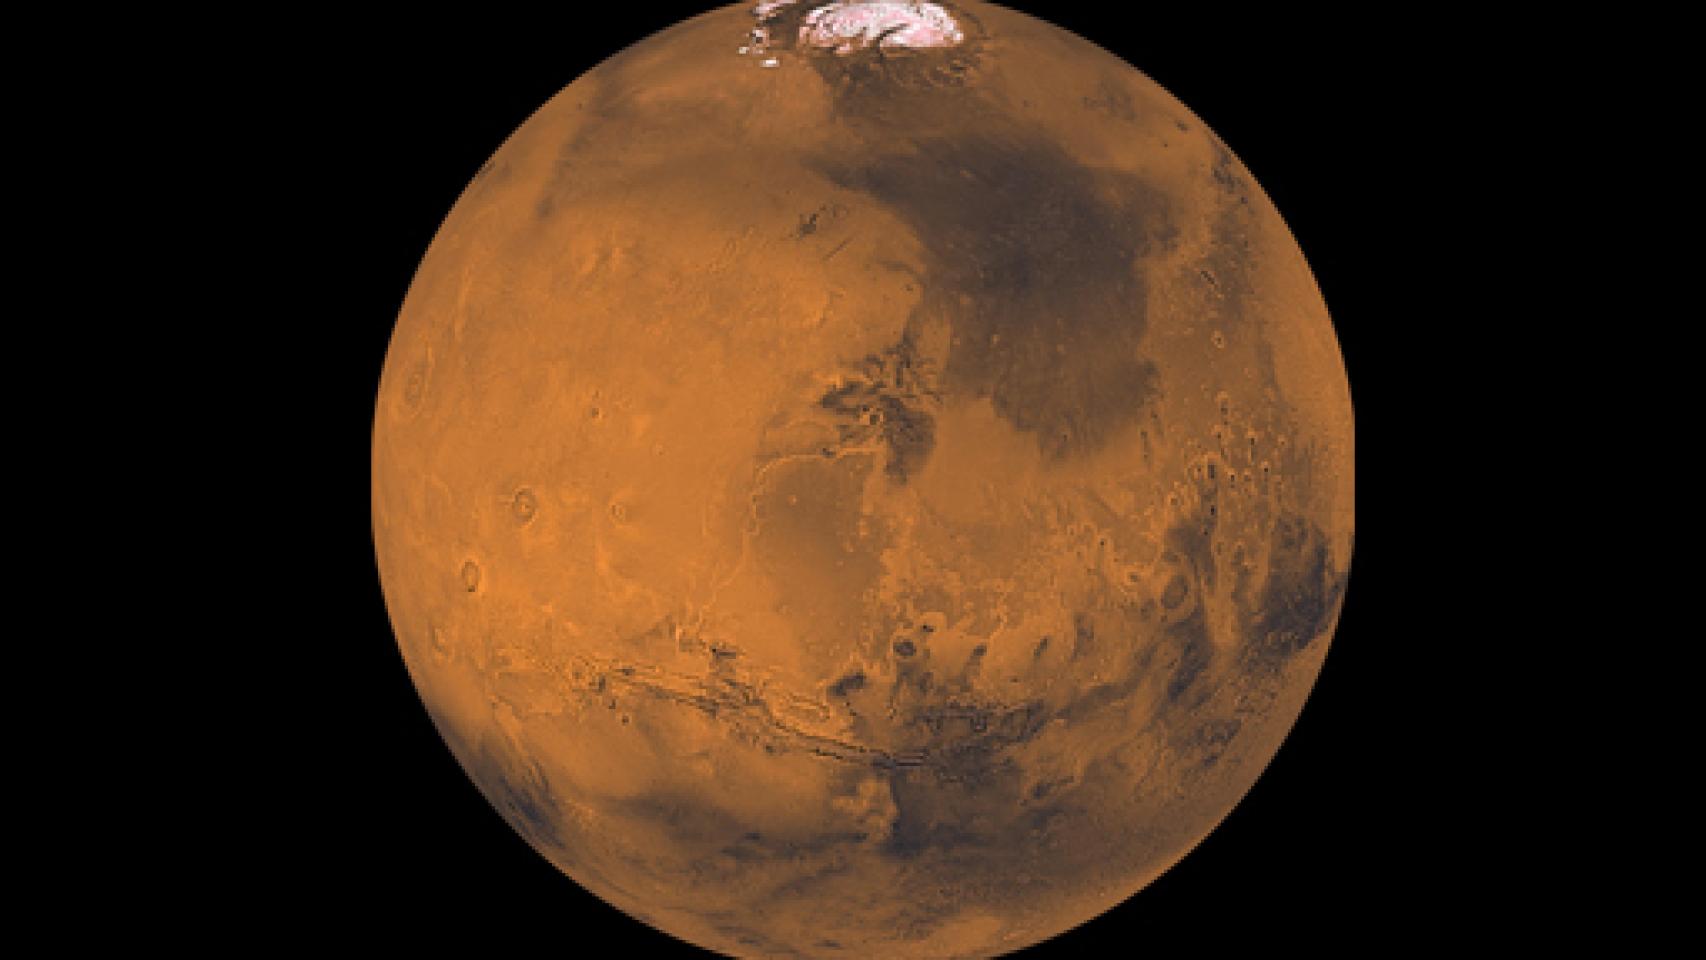 Image: Marte, leyenda y realidad